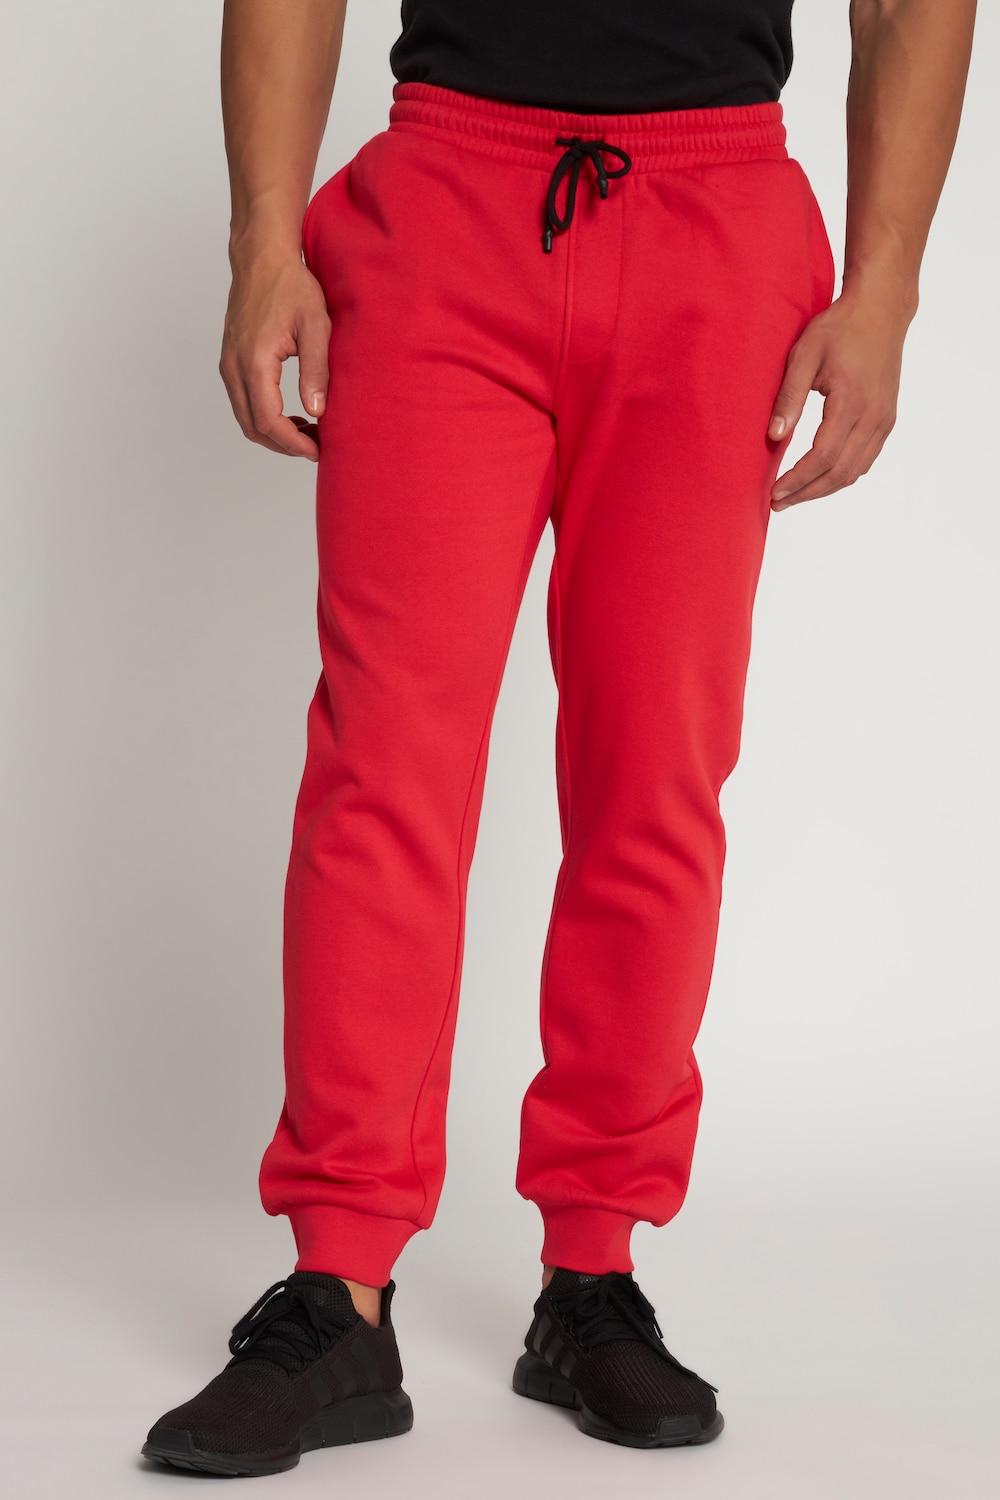 Große Größen Sweat-Hose, Herren, rot, Größe: 5XL, Baumwolle/Polyester, JP1880 von JP1880